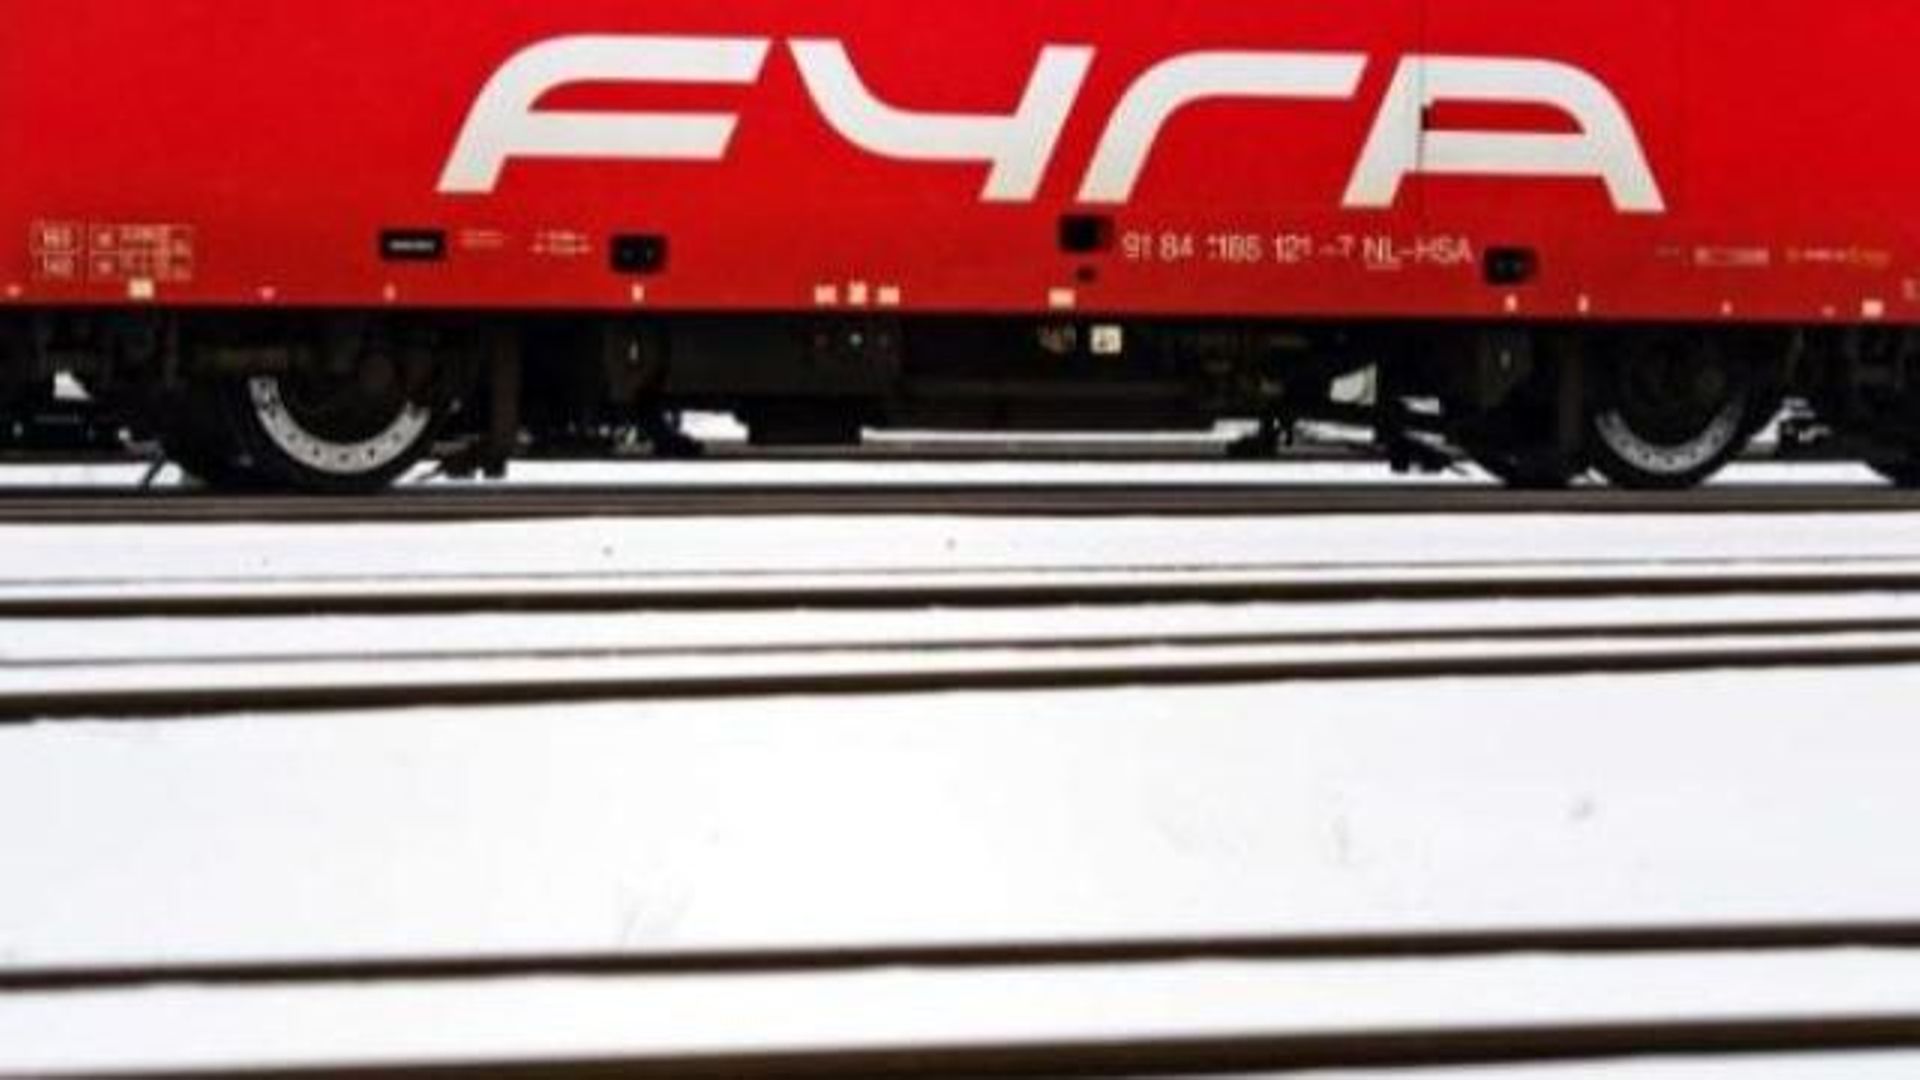 La commande des trains Fyra, fruit d'une politique de restriction budgétaire